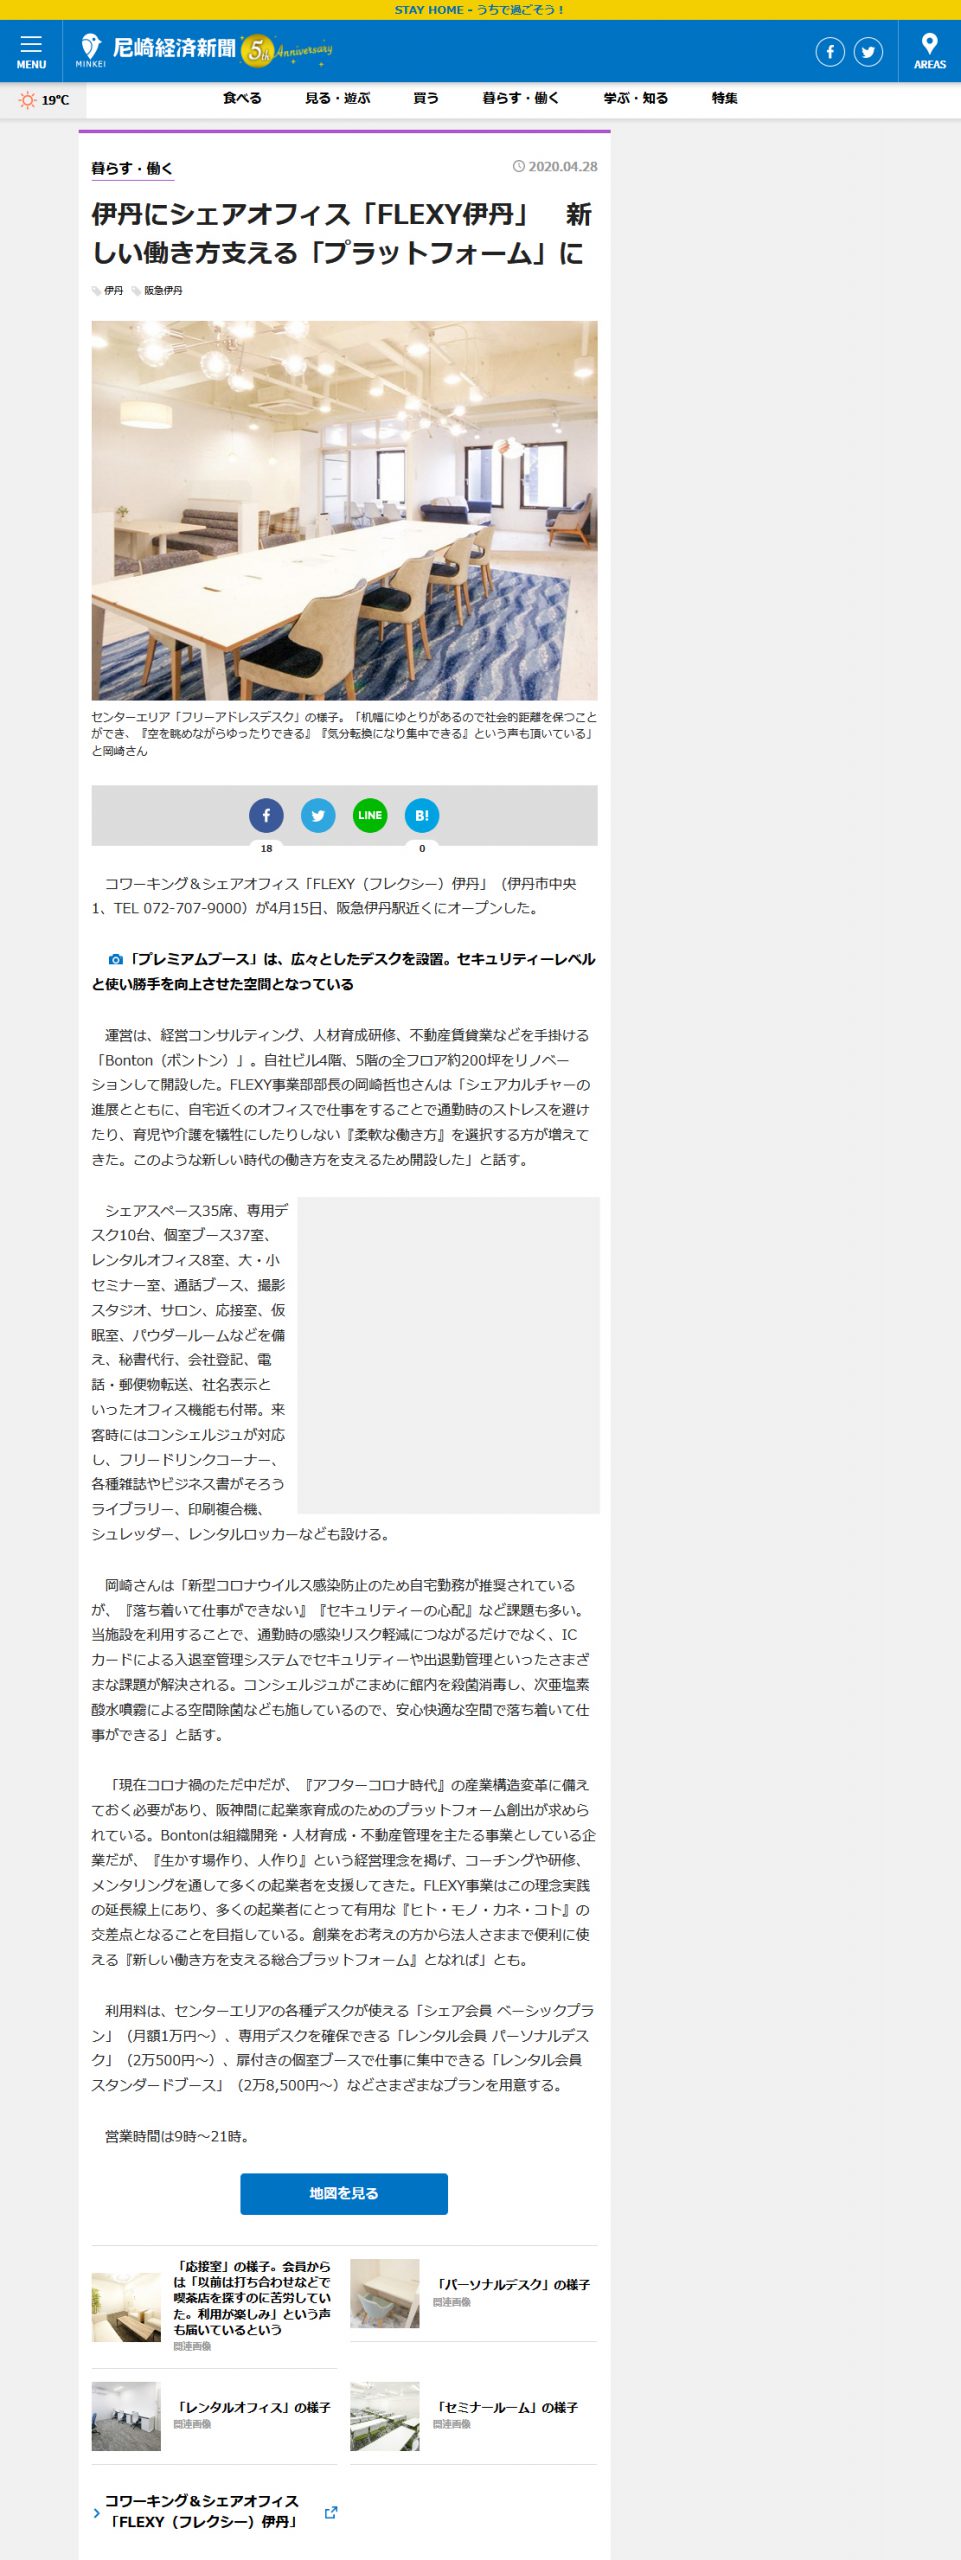 尼崎経済新聞にてFlexy伊丹（フレクシ―伊丹）が紹介されました。